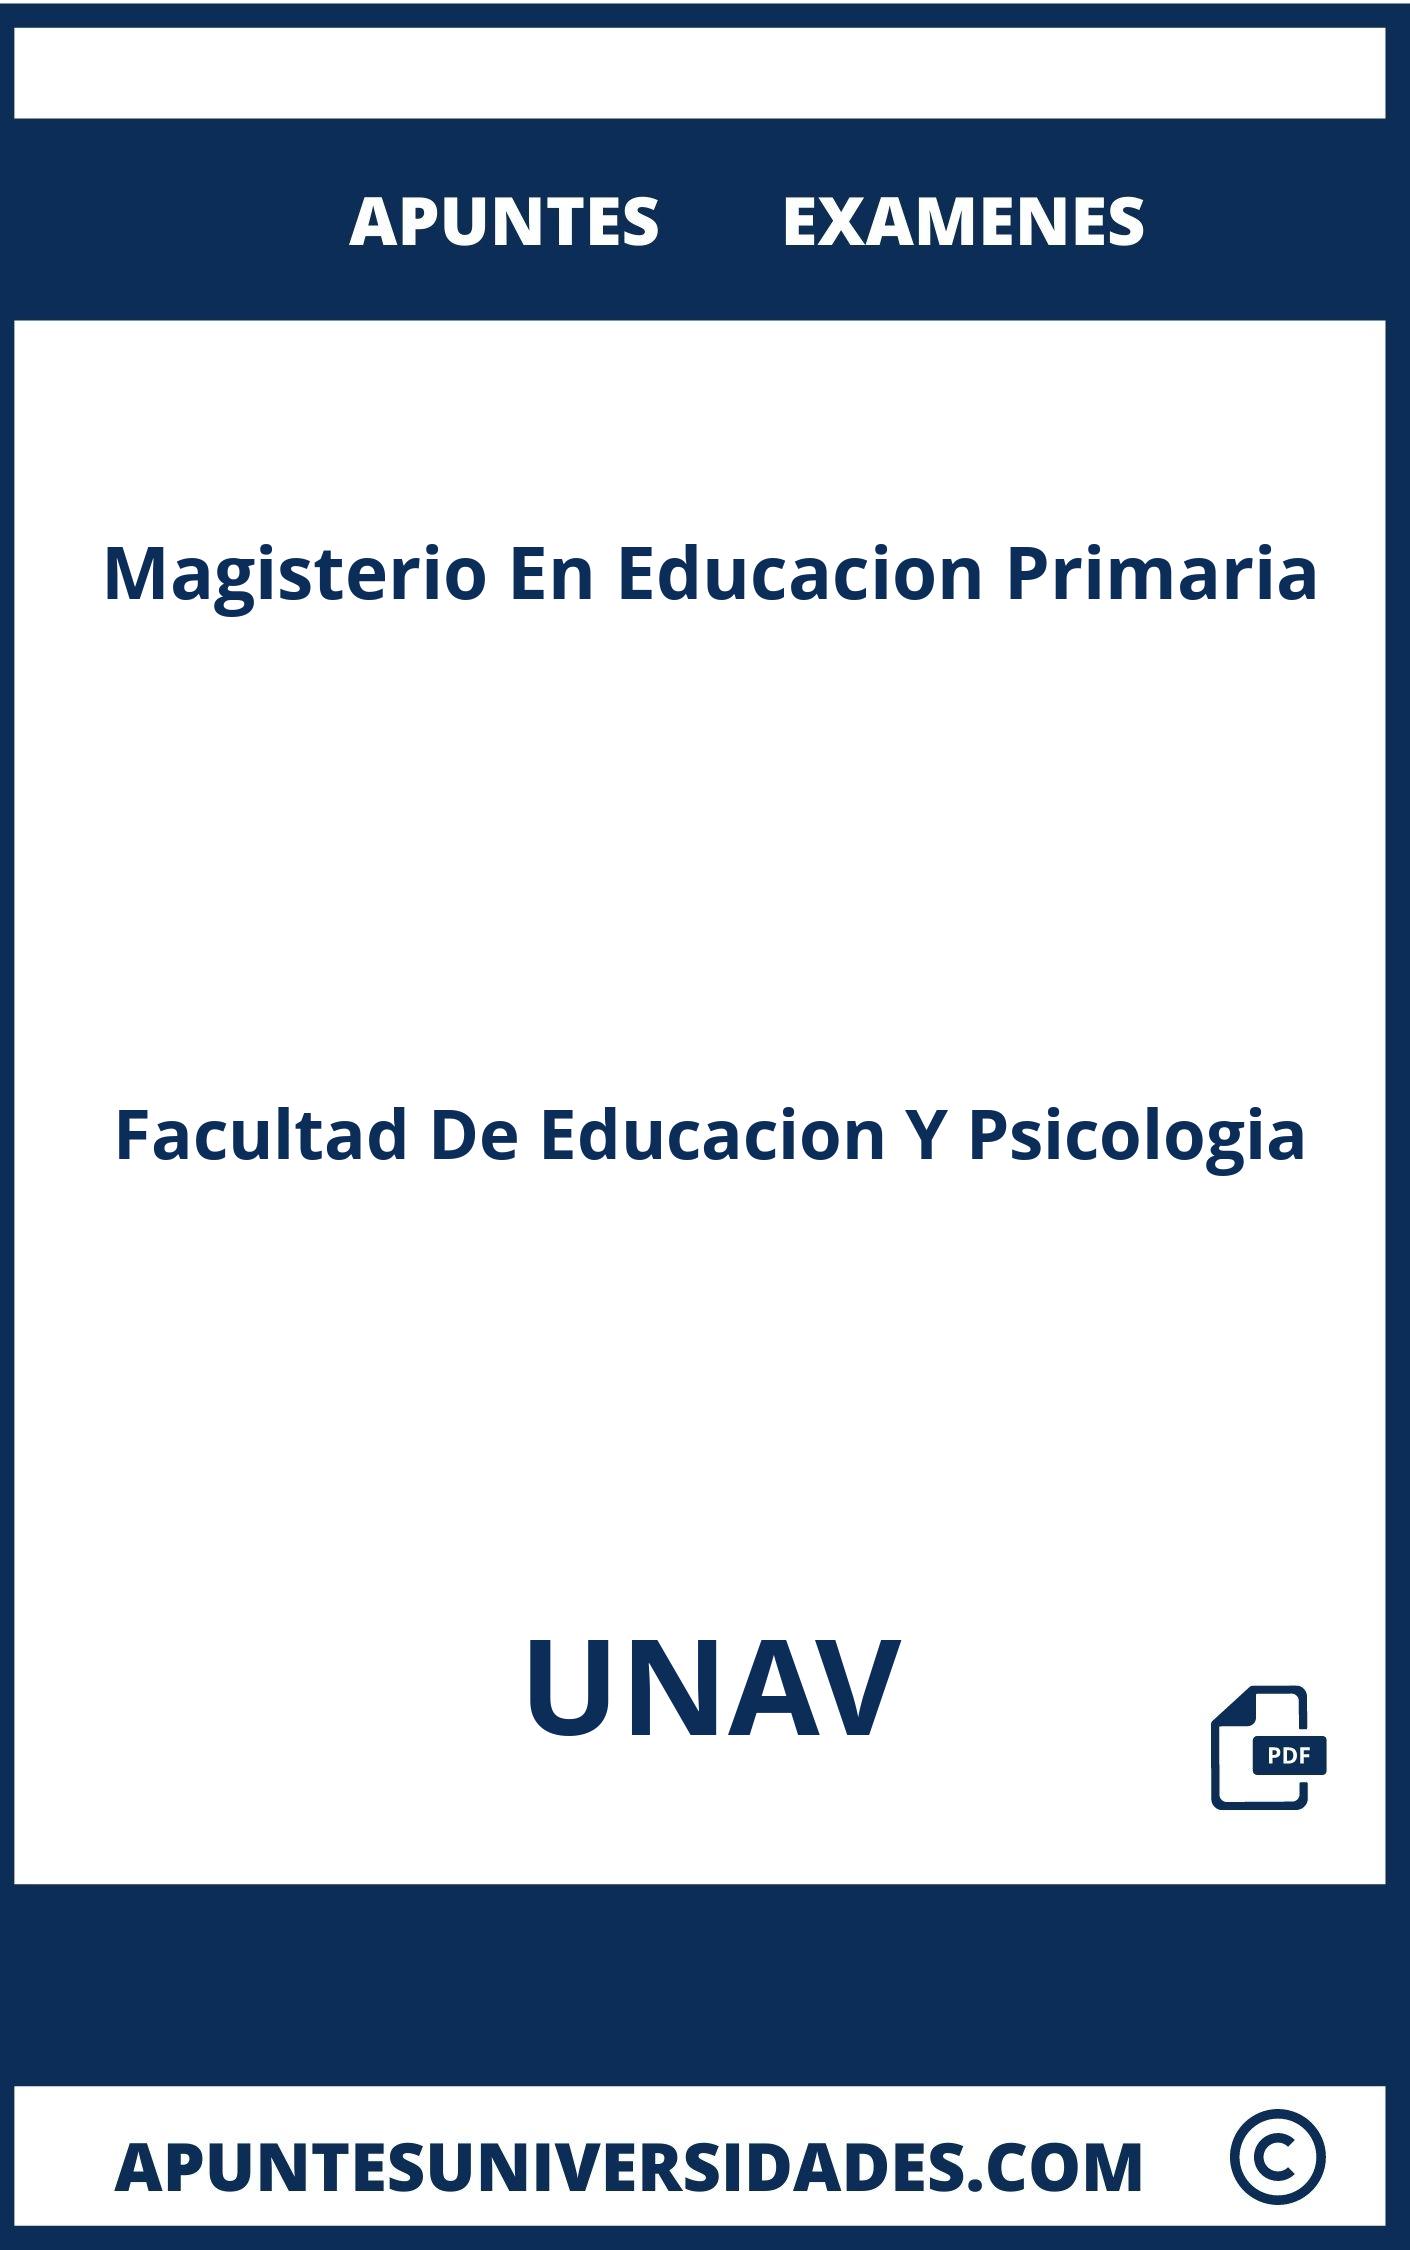 Examenes y Apuntes Magisterio En Educacion Primaria UNAV